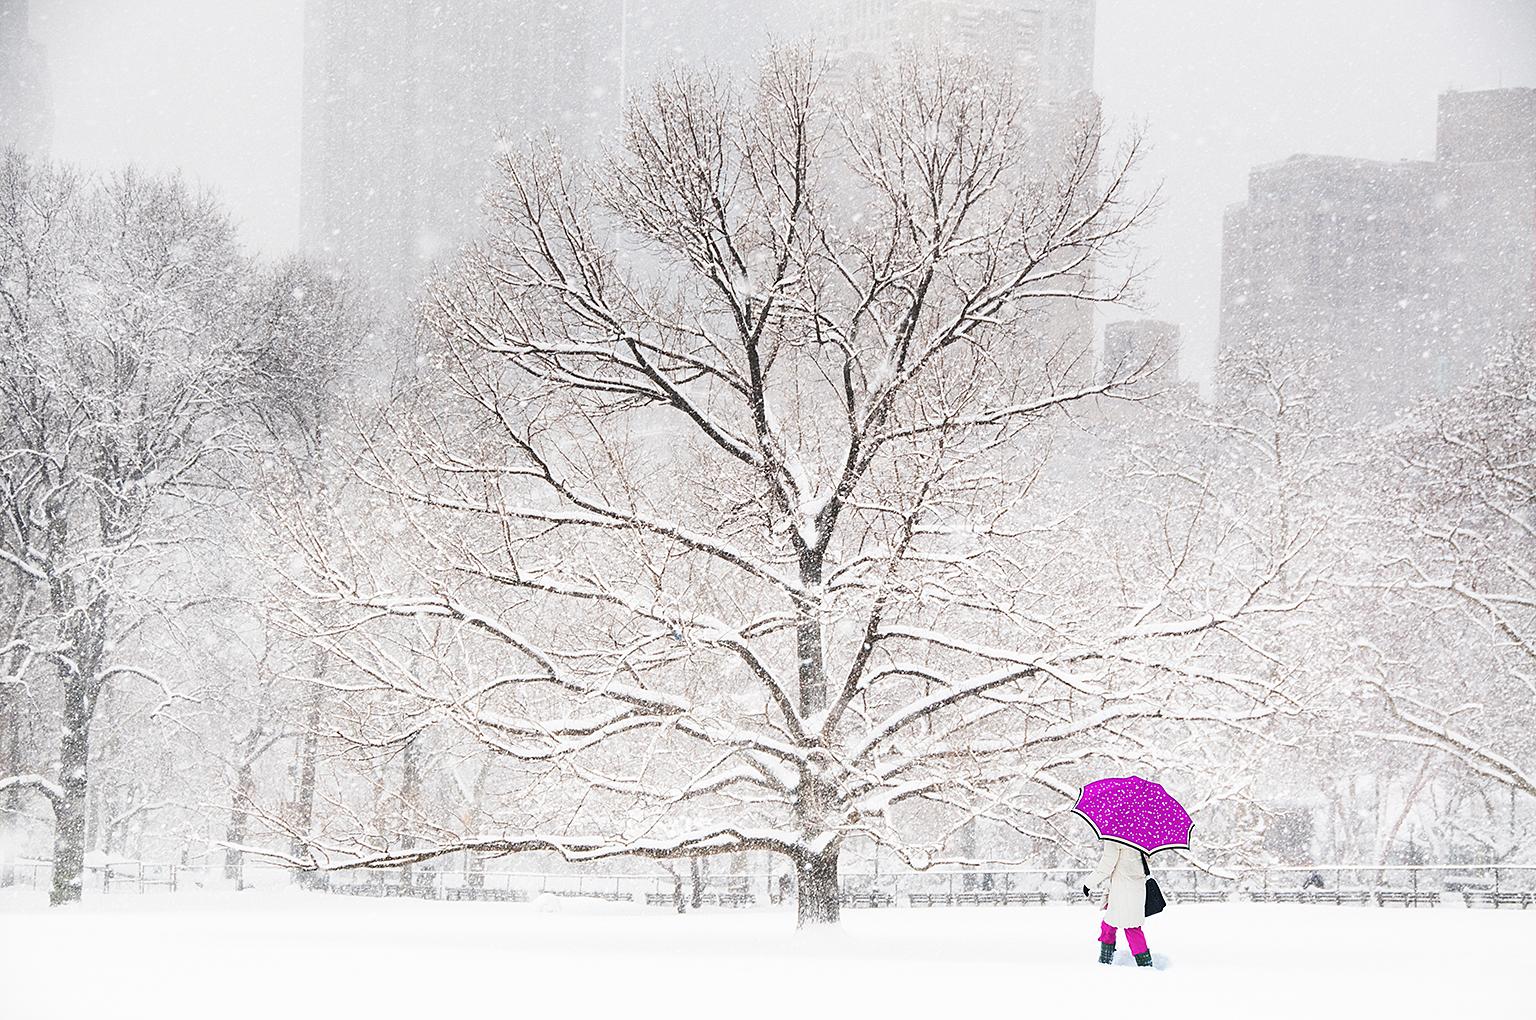 Mitchell Funk Landscape Photograph – Central Park: Schirm im Schnee